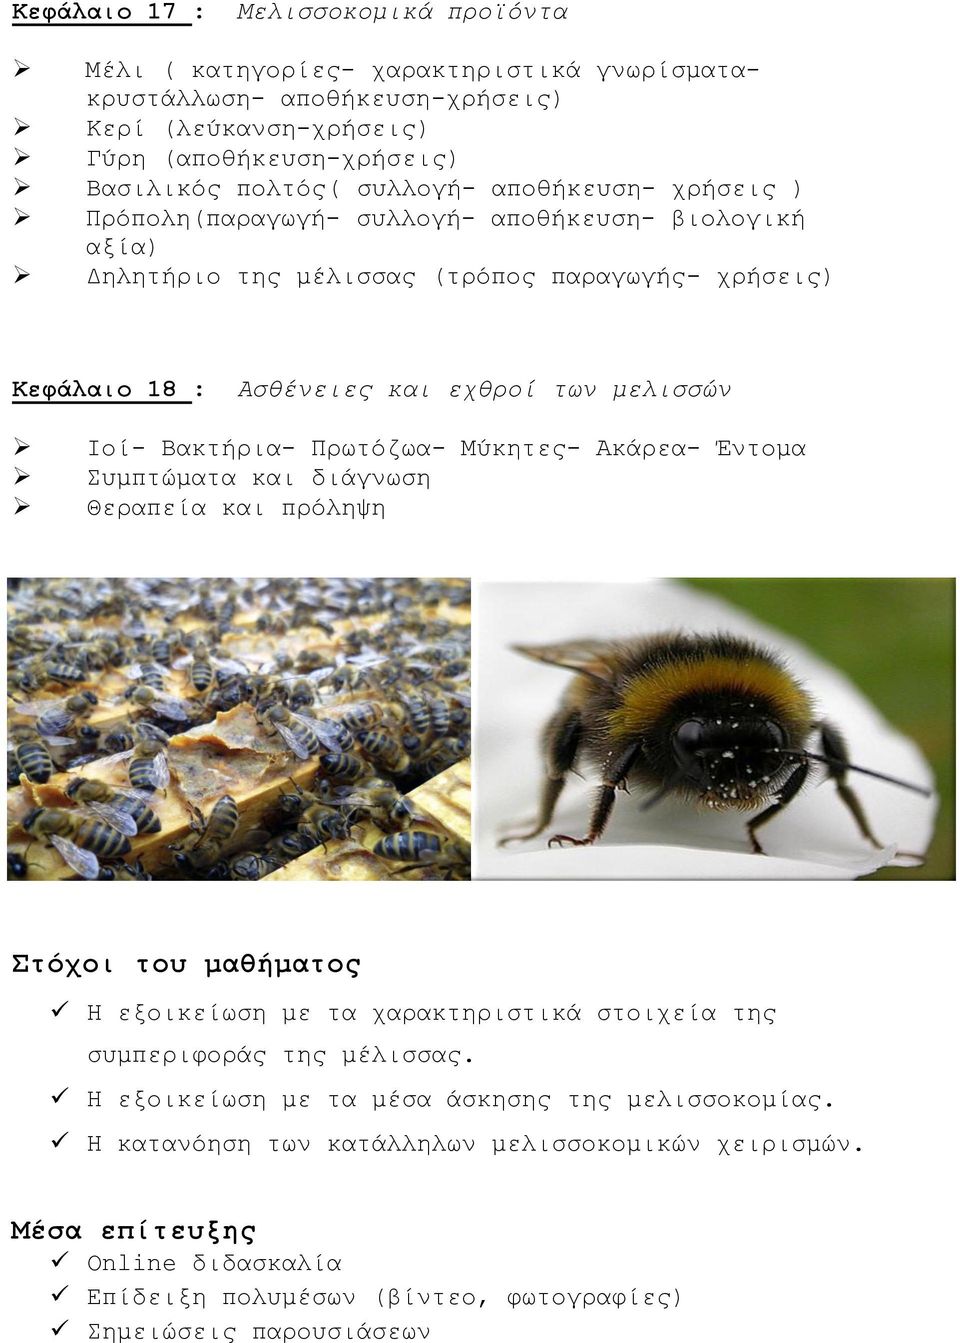 Βακτήρια- Πρωτόζωα- Μύκητες- Ακάρεα- Έντομα Συμπτώματα και διάγνωση Θεραπεία και πρόληψη Στόχοι του μαθήματος Η εξοικείωση με τα χαρακτηριστικά στοιχεία της συμπεριφοράς της μέλισσας.